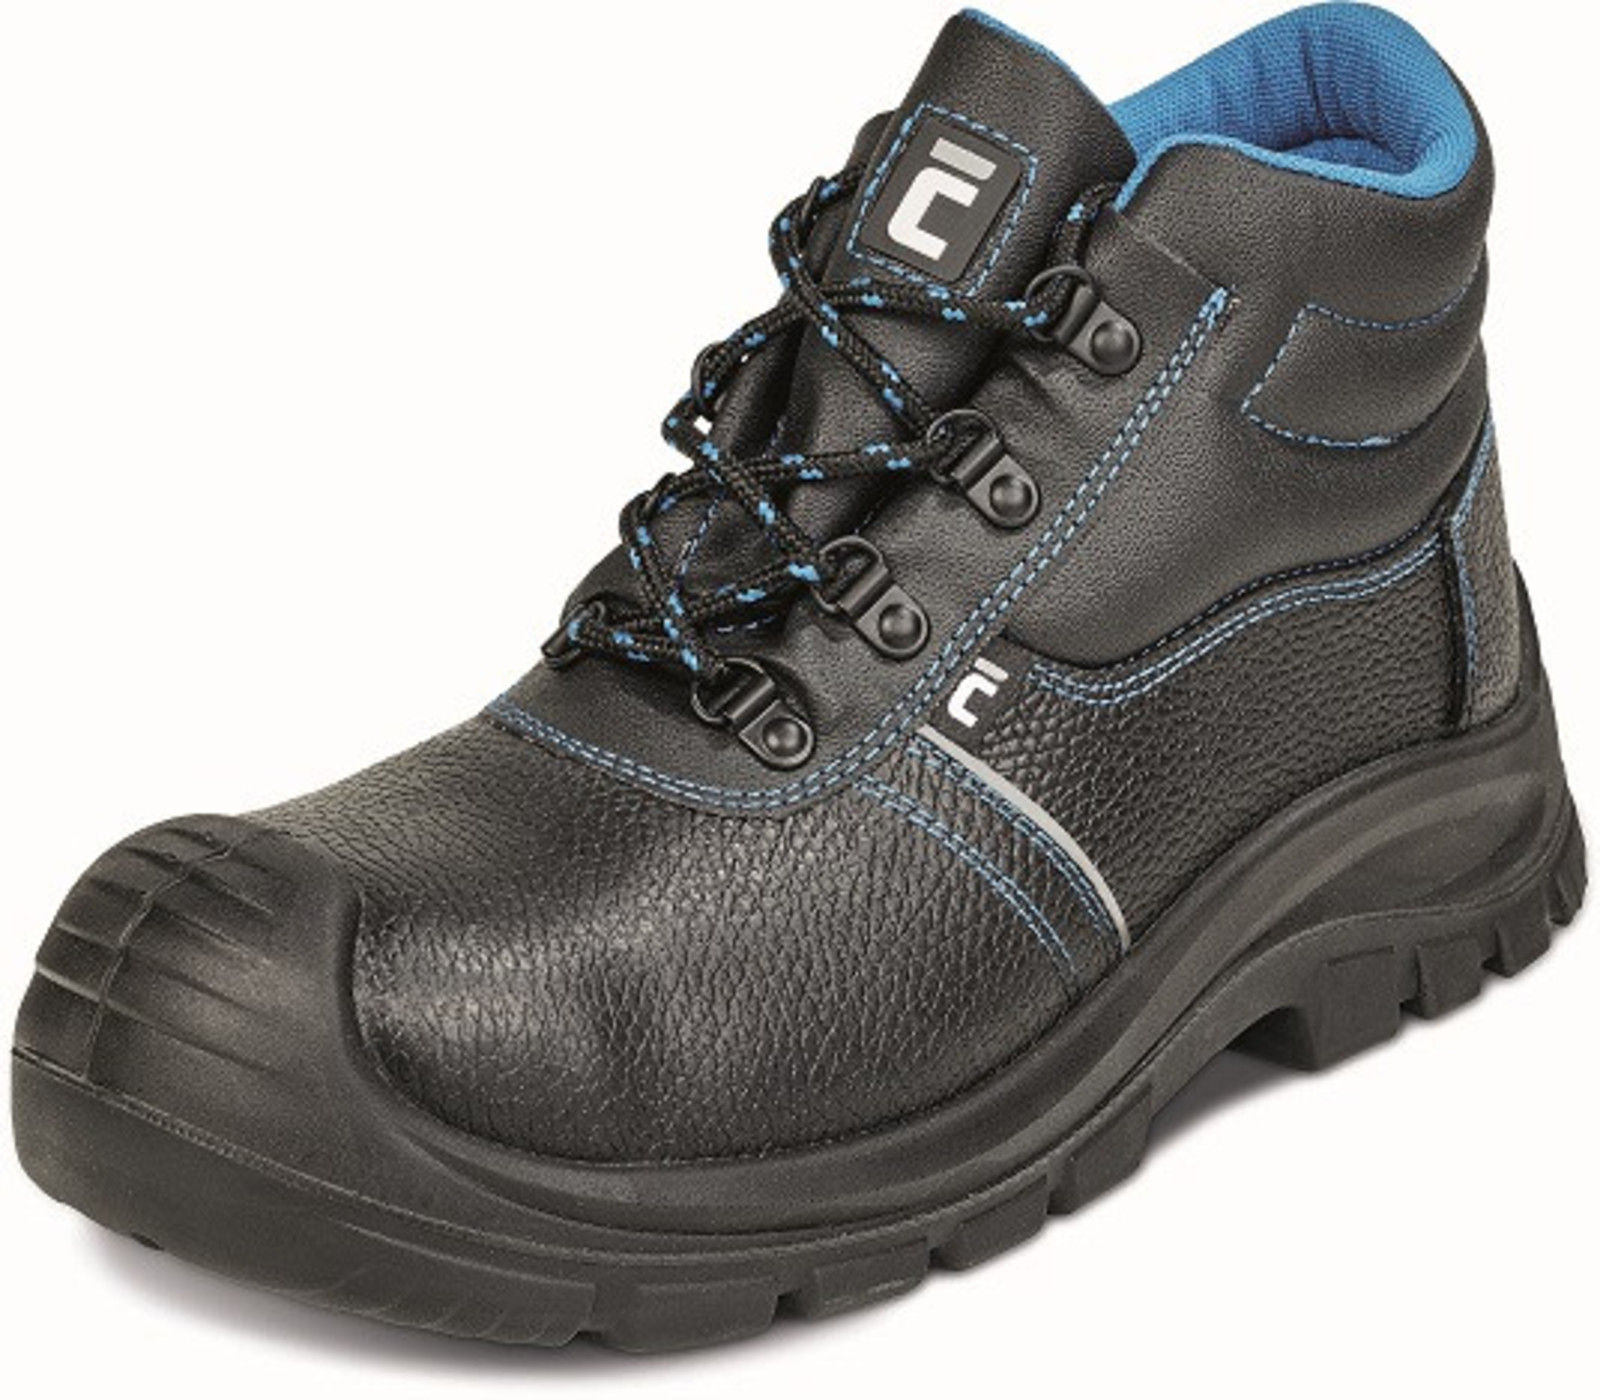 Bezpečnostná obuv Raven XT S1P - veľkosť: 43, farba: čierna